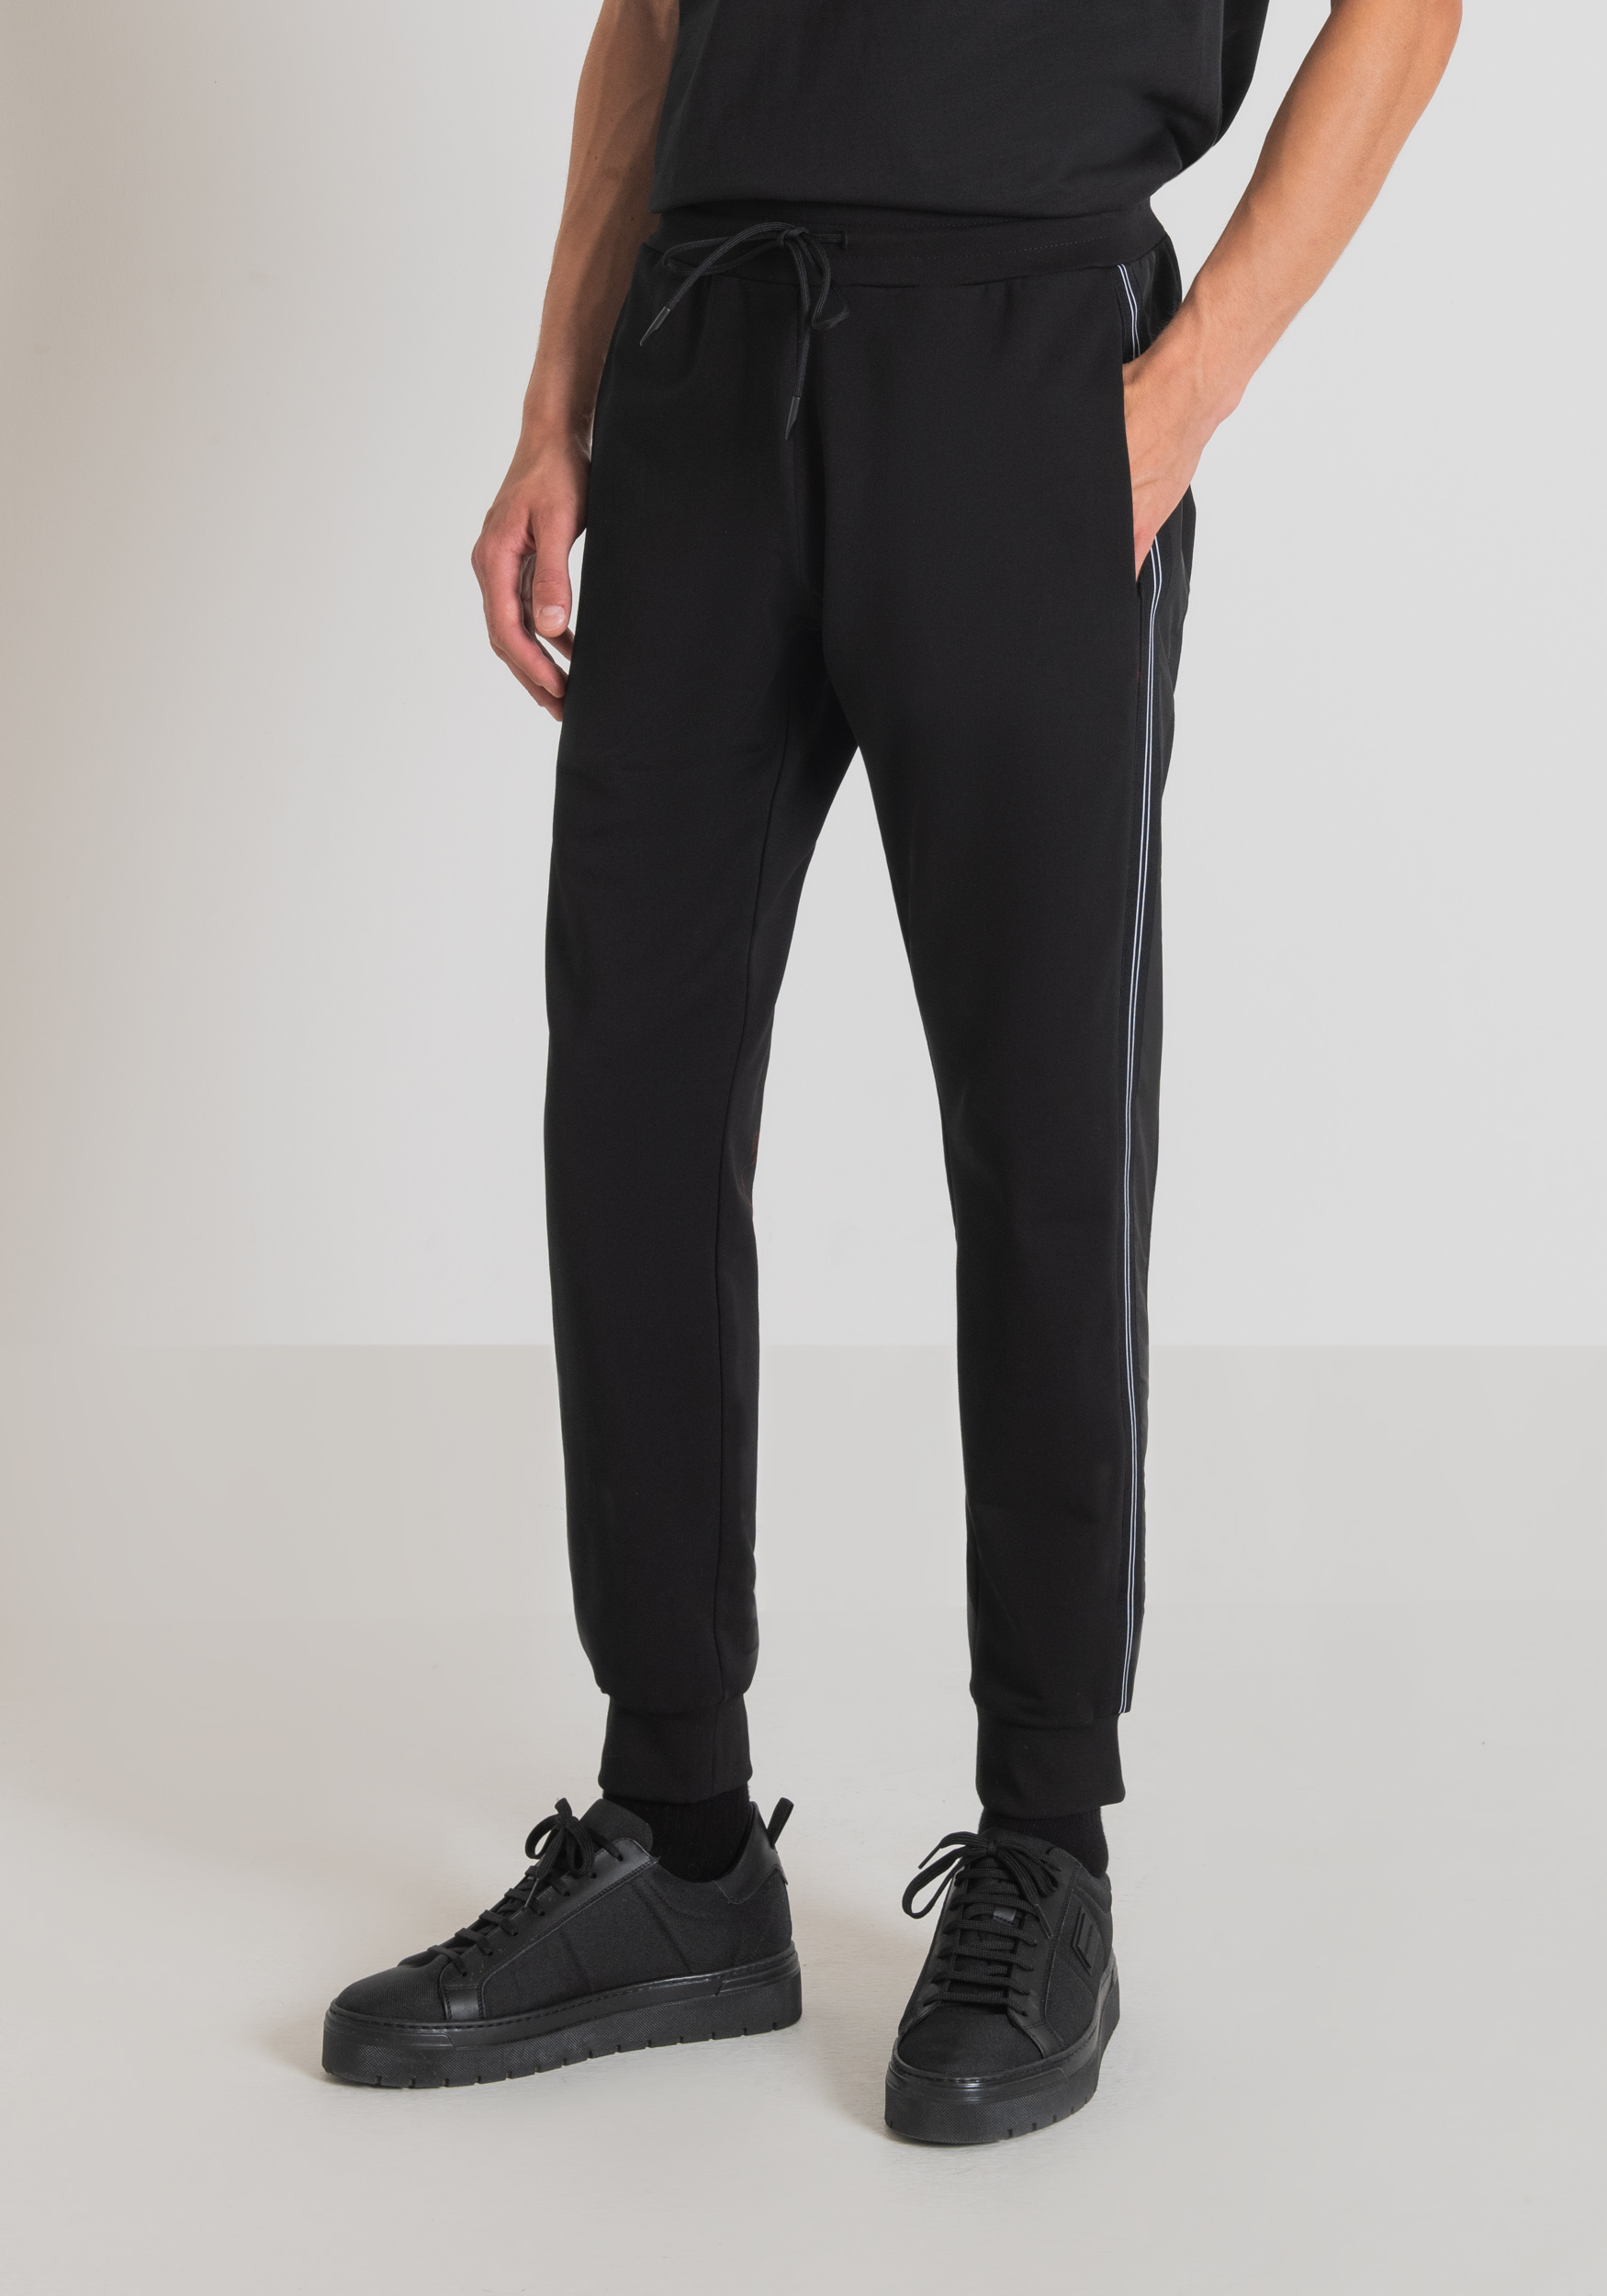 Antony Morato Pantalon Molletone Slim Fit En Coton Elastique Avec Element Contrastant En Tissu Technique Noir | Homme Pantalons